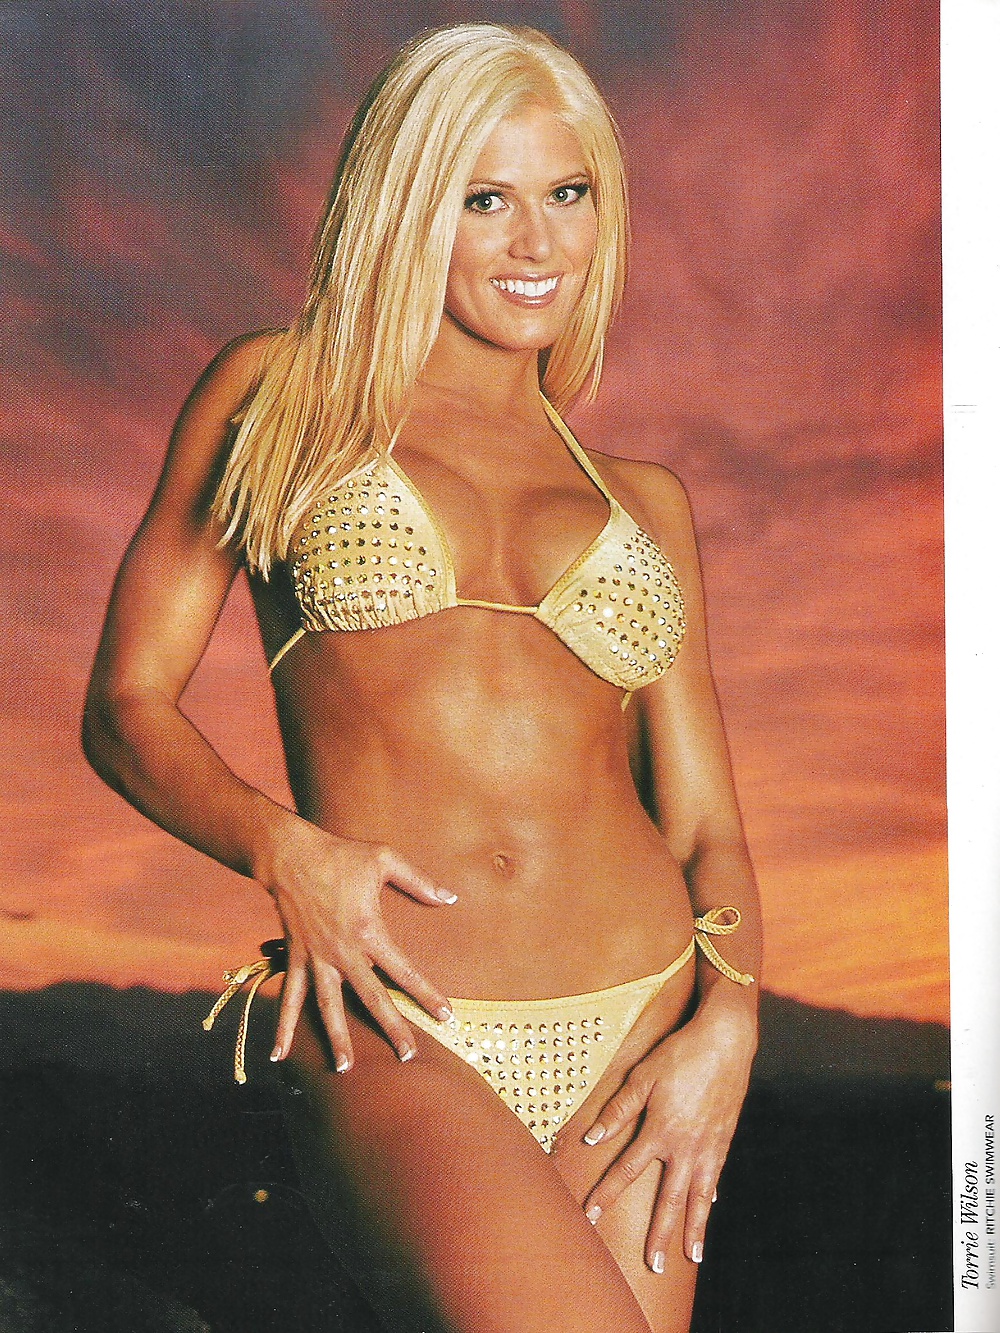 Torrie Wilson - WWE Divas Magazine Collection #25199387